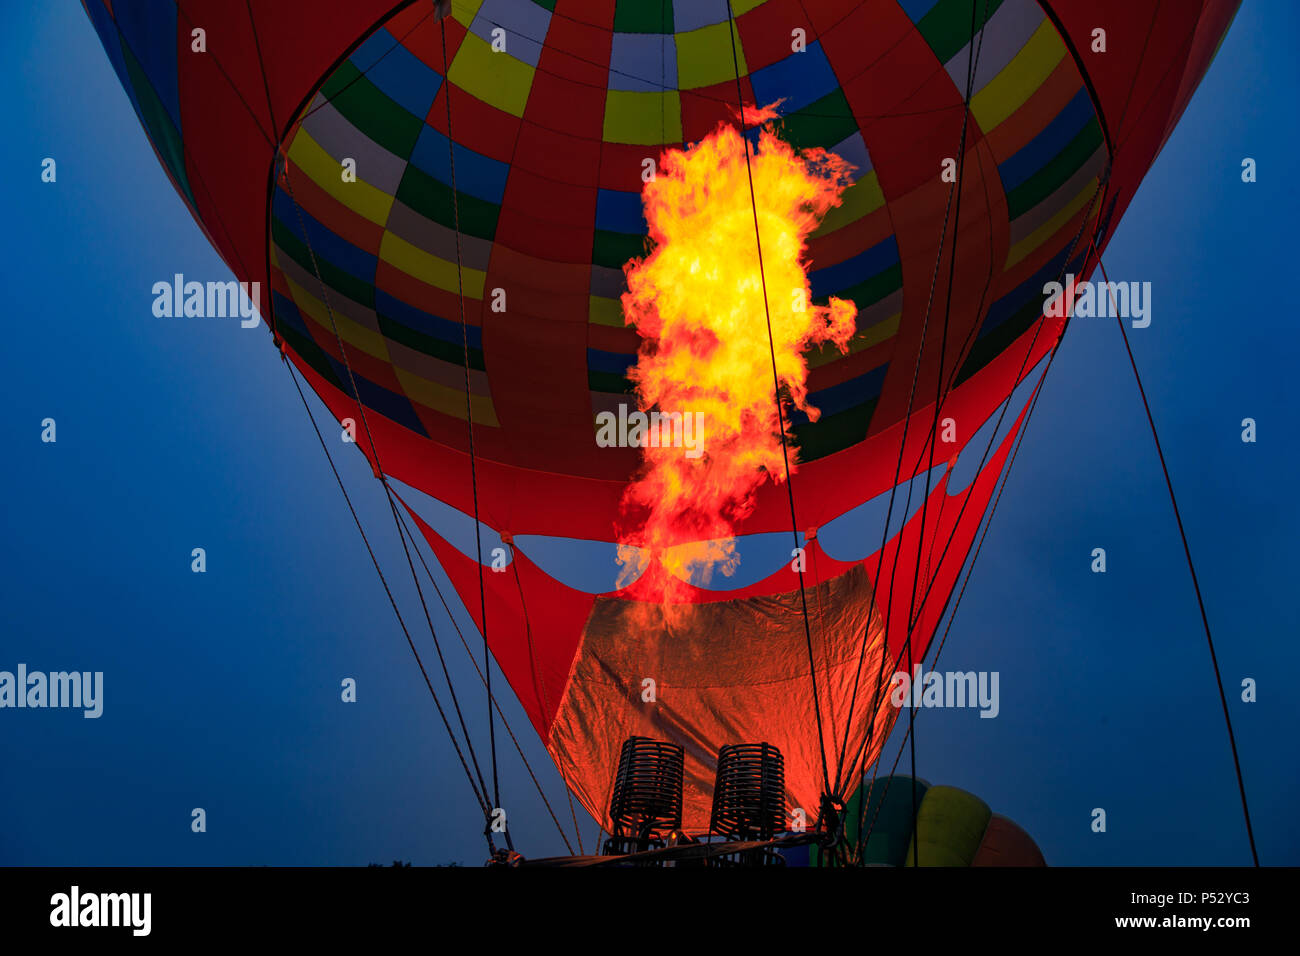 Avondale, PA, USA - Le 23 juin 2018 : l'air chaud flamme dans un ballon au cours de l'inflation à la Chester Comté de montgolfières au nouveau jardin battant Fi Banque D'Images